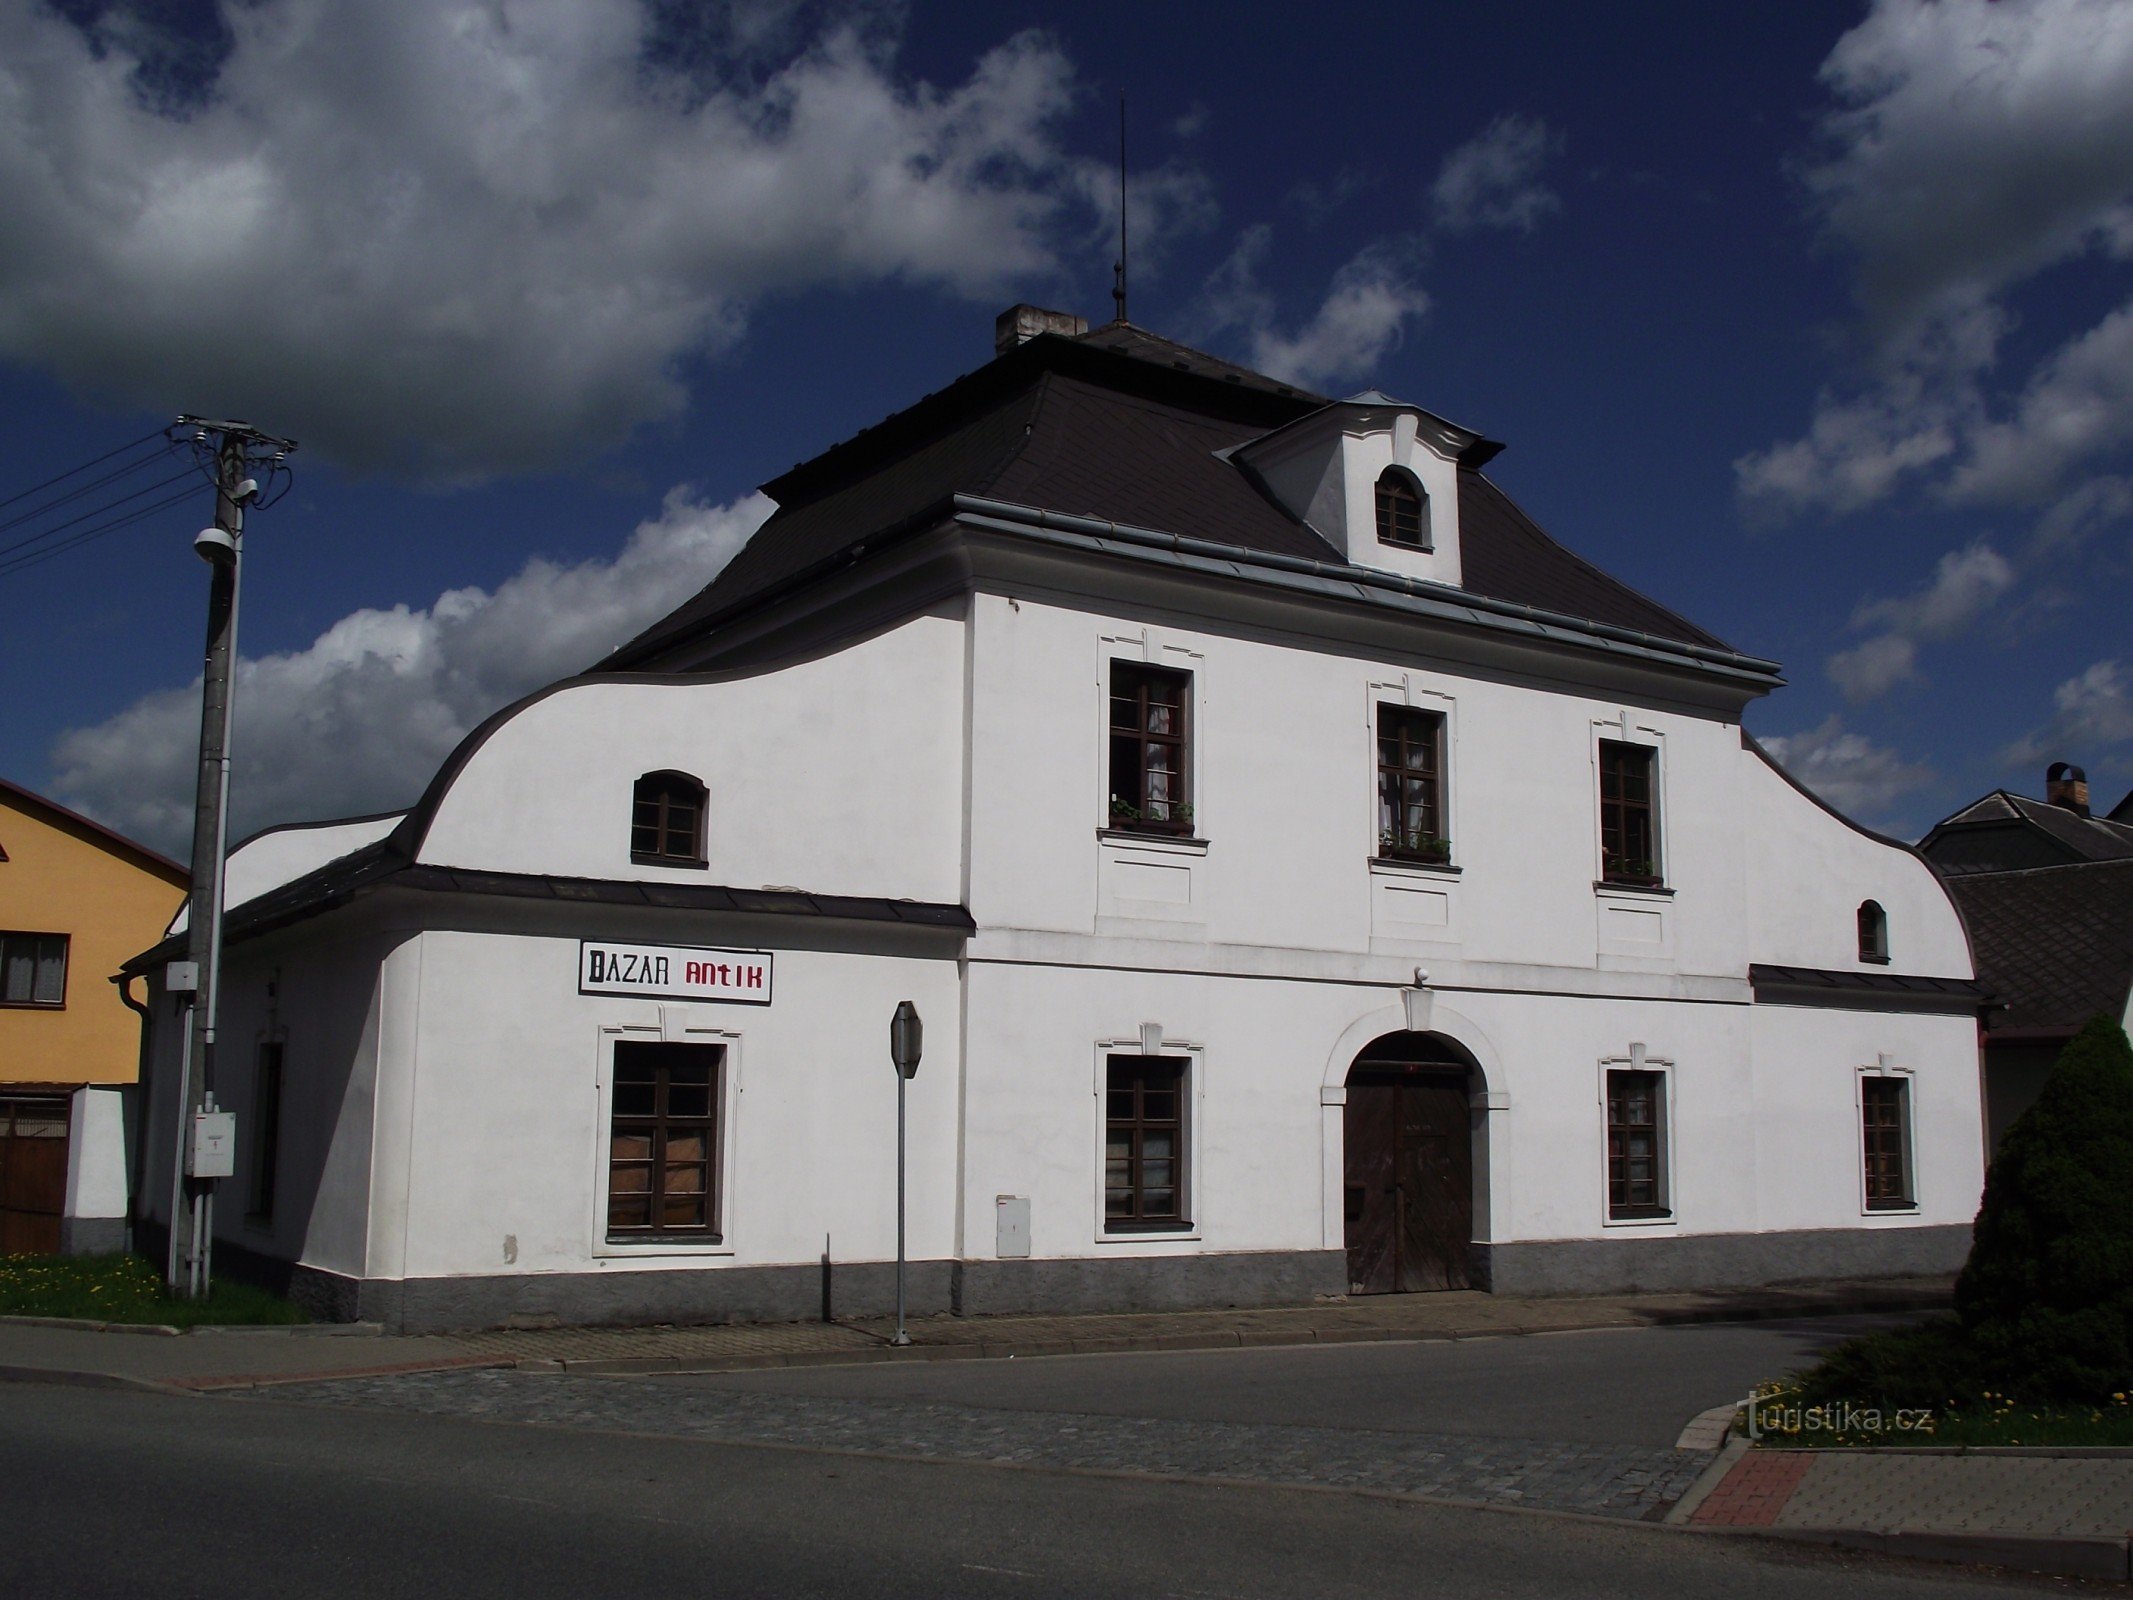 Vojnův Městec - Santini's rychta and inn "U Němečků"